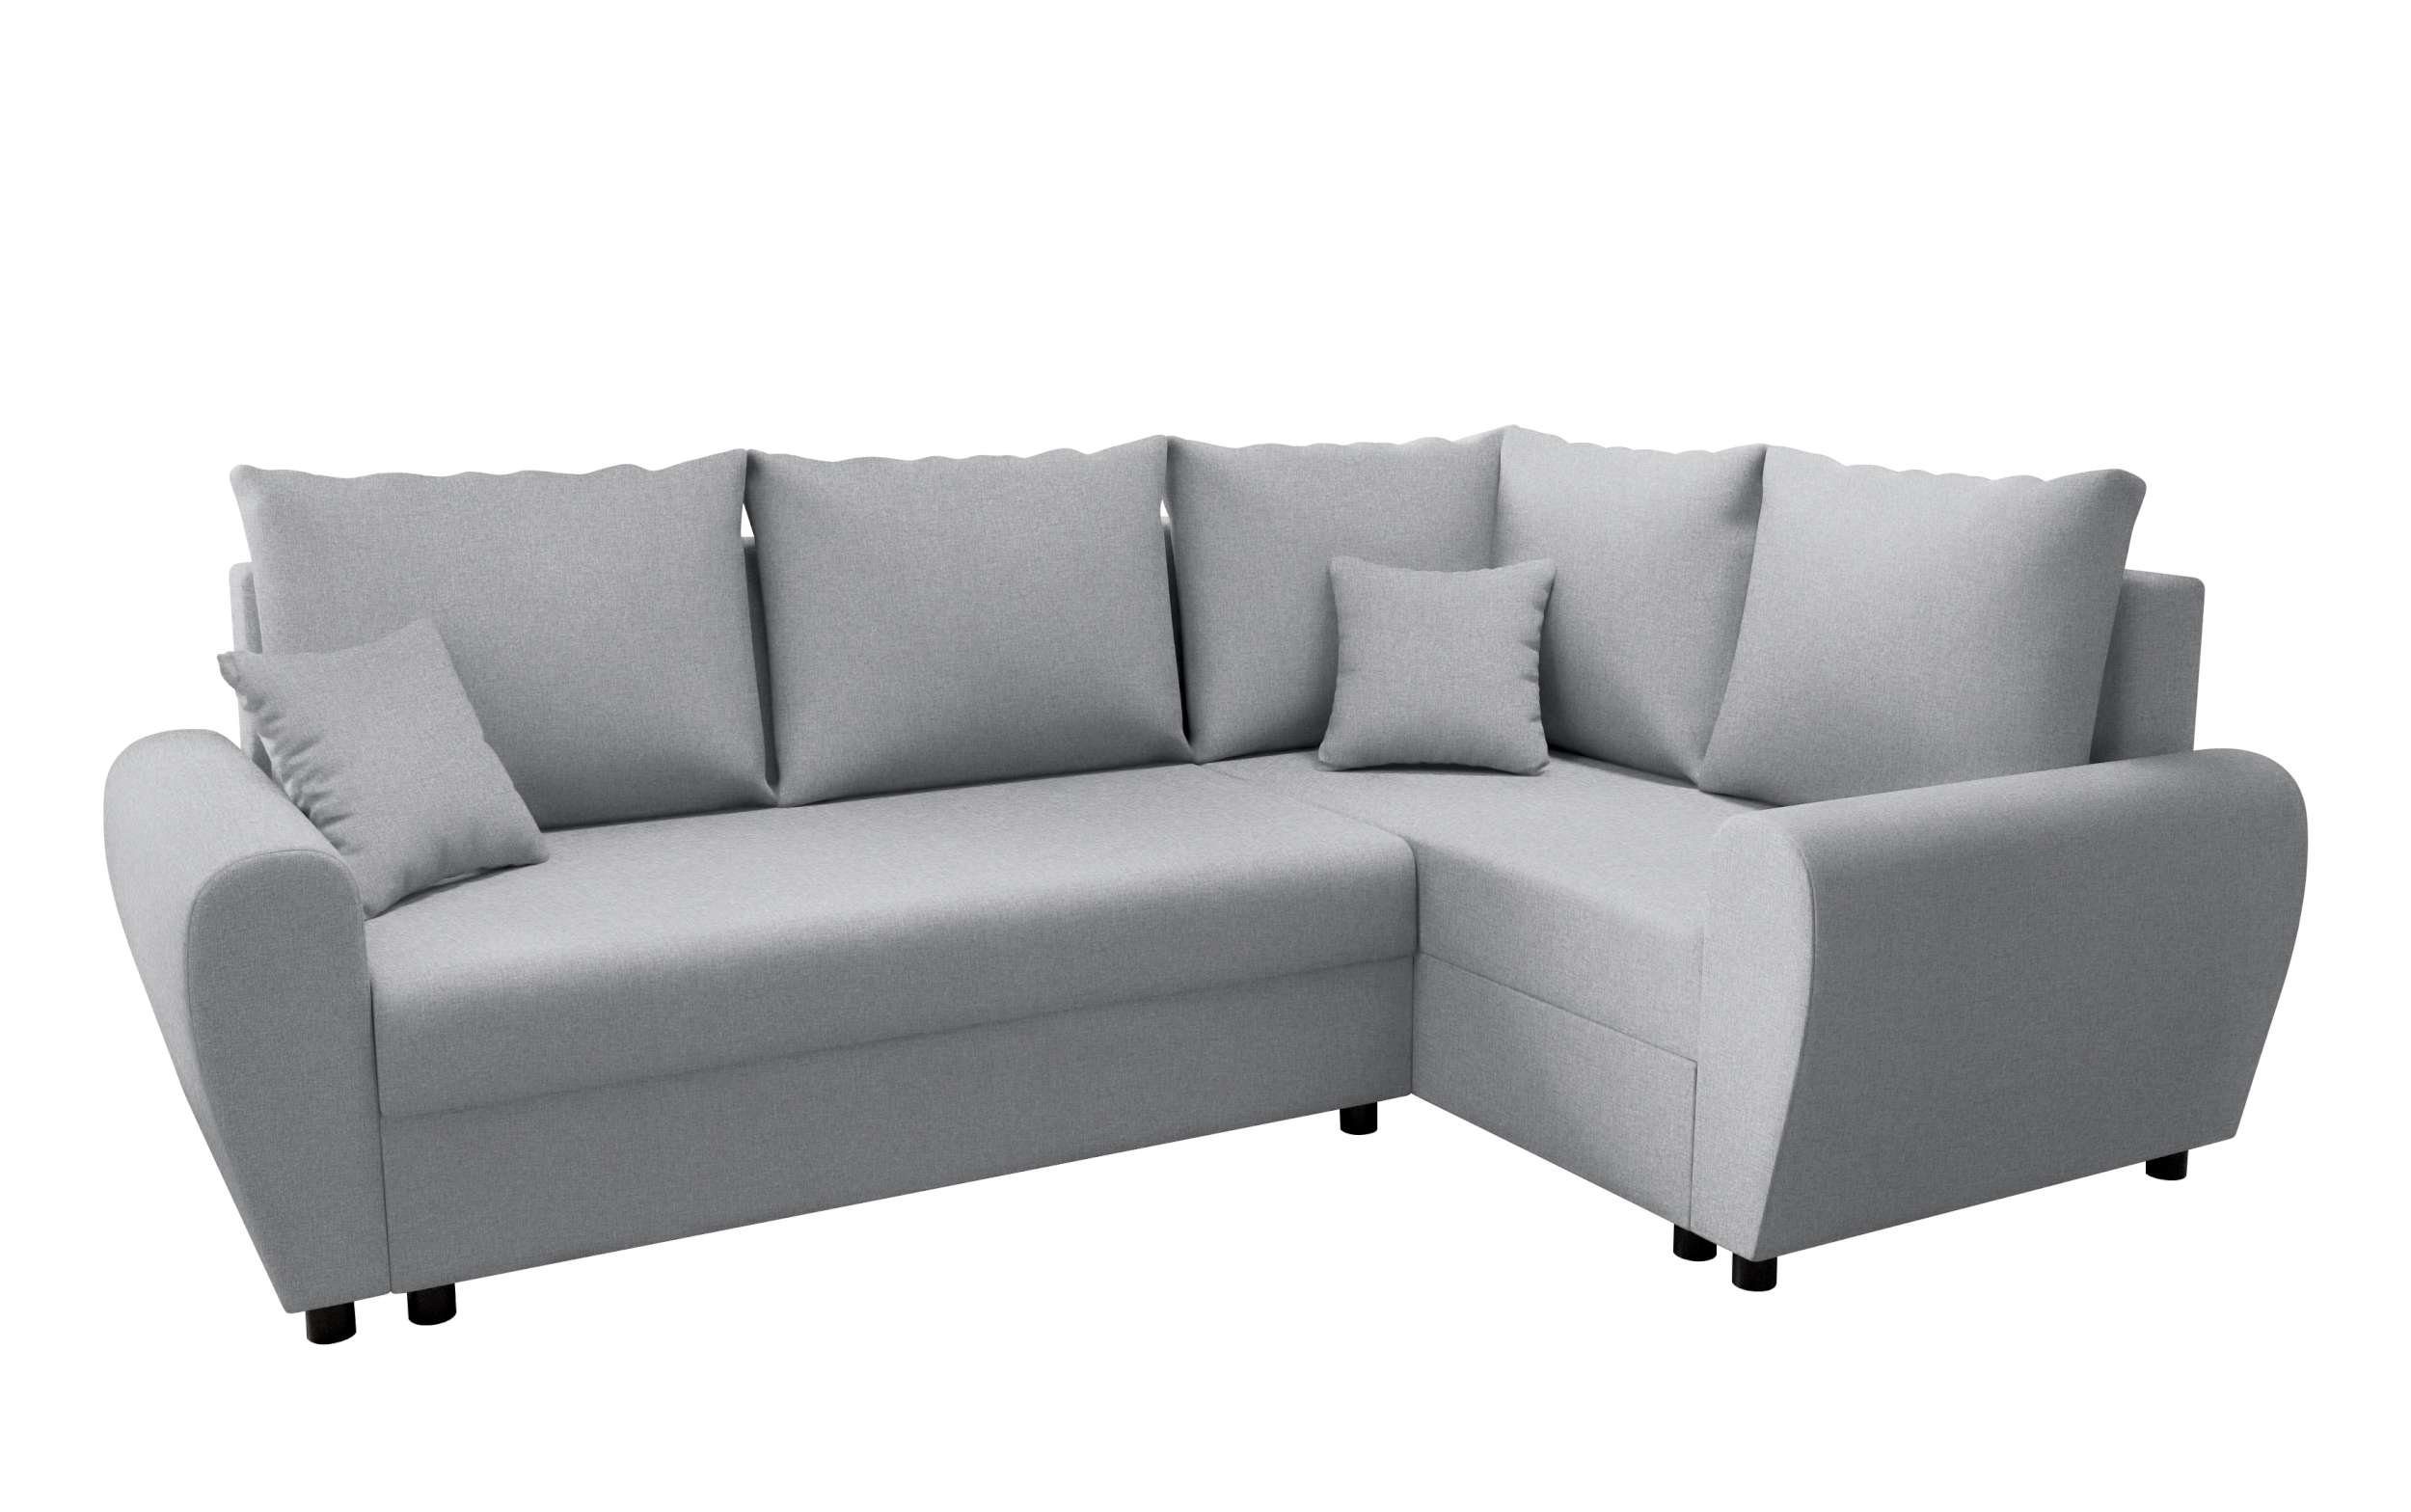 Stylefy Ecksofa mit Sofa, Eckcouch, L-Form, Bettkasten, mit Valence, Bettfunktion, Modern Sitzkomfort, Design